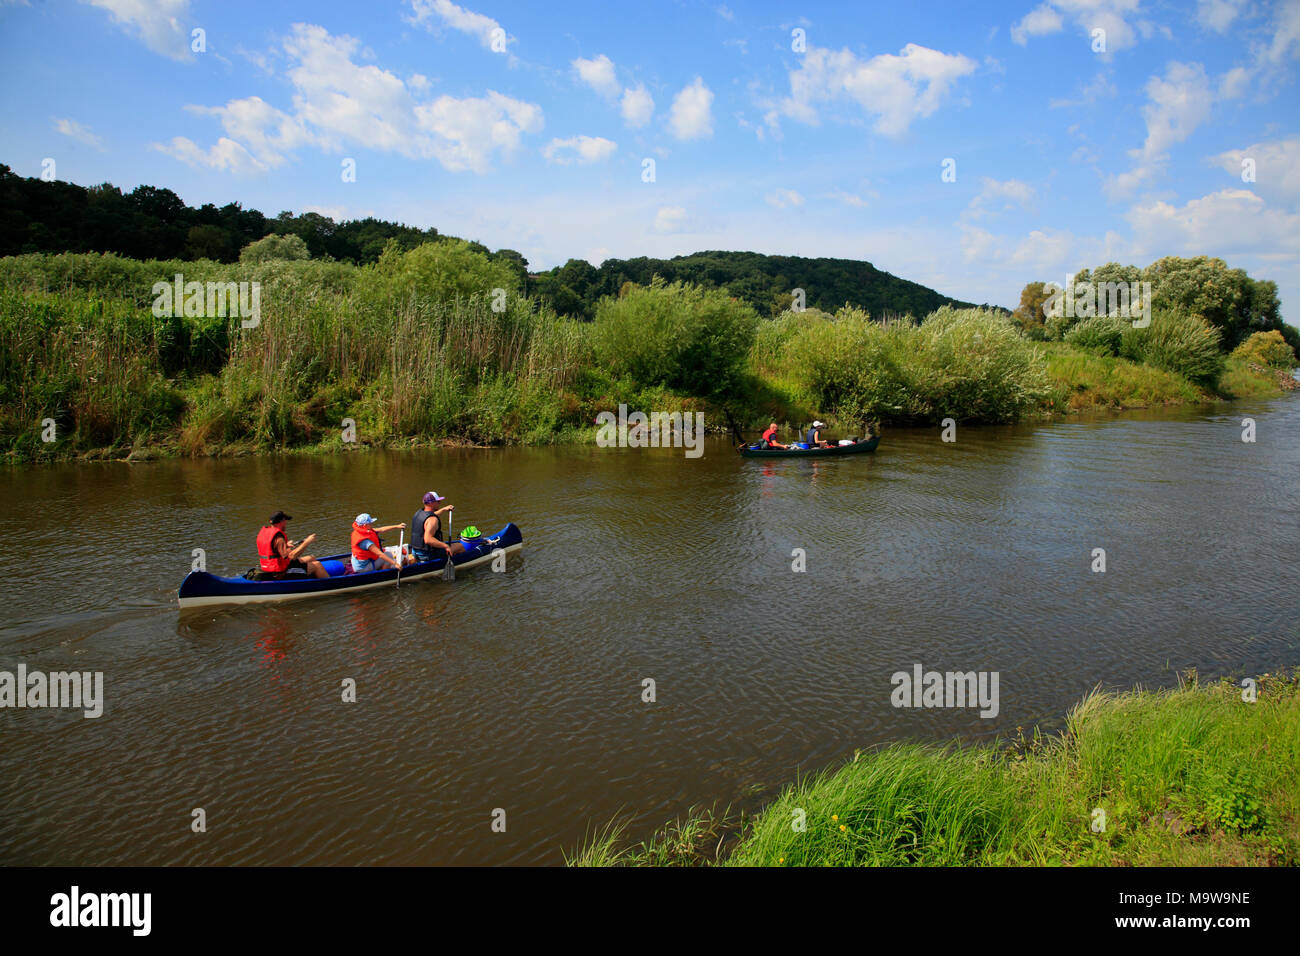 Canoes on river Jeetzel, Hitzacker (Elbe), Lower Saxony, Germany, Europe Stock Photo